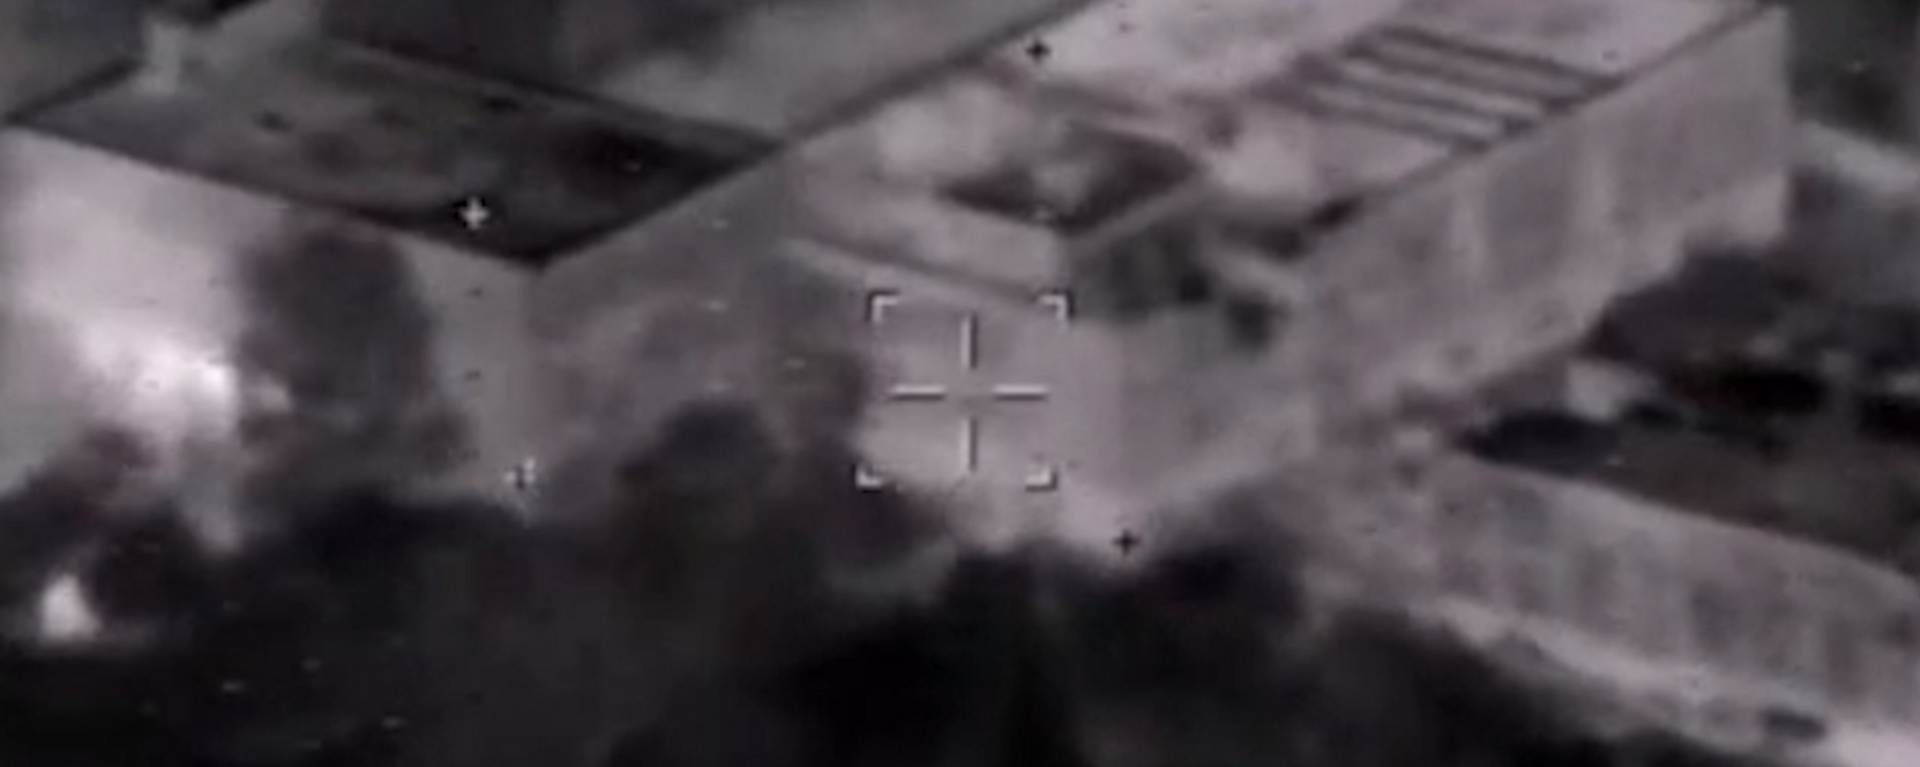 Vídeo: un misil de alta precisión ruso destruye un edificio de las FFAA de Ucrania - Sputnik Mundo, 1920, 05.07.2022